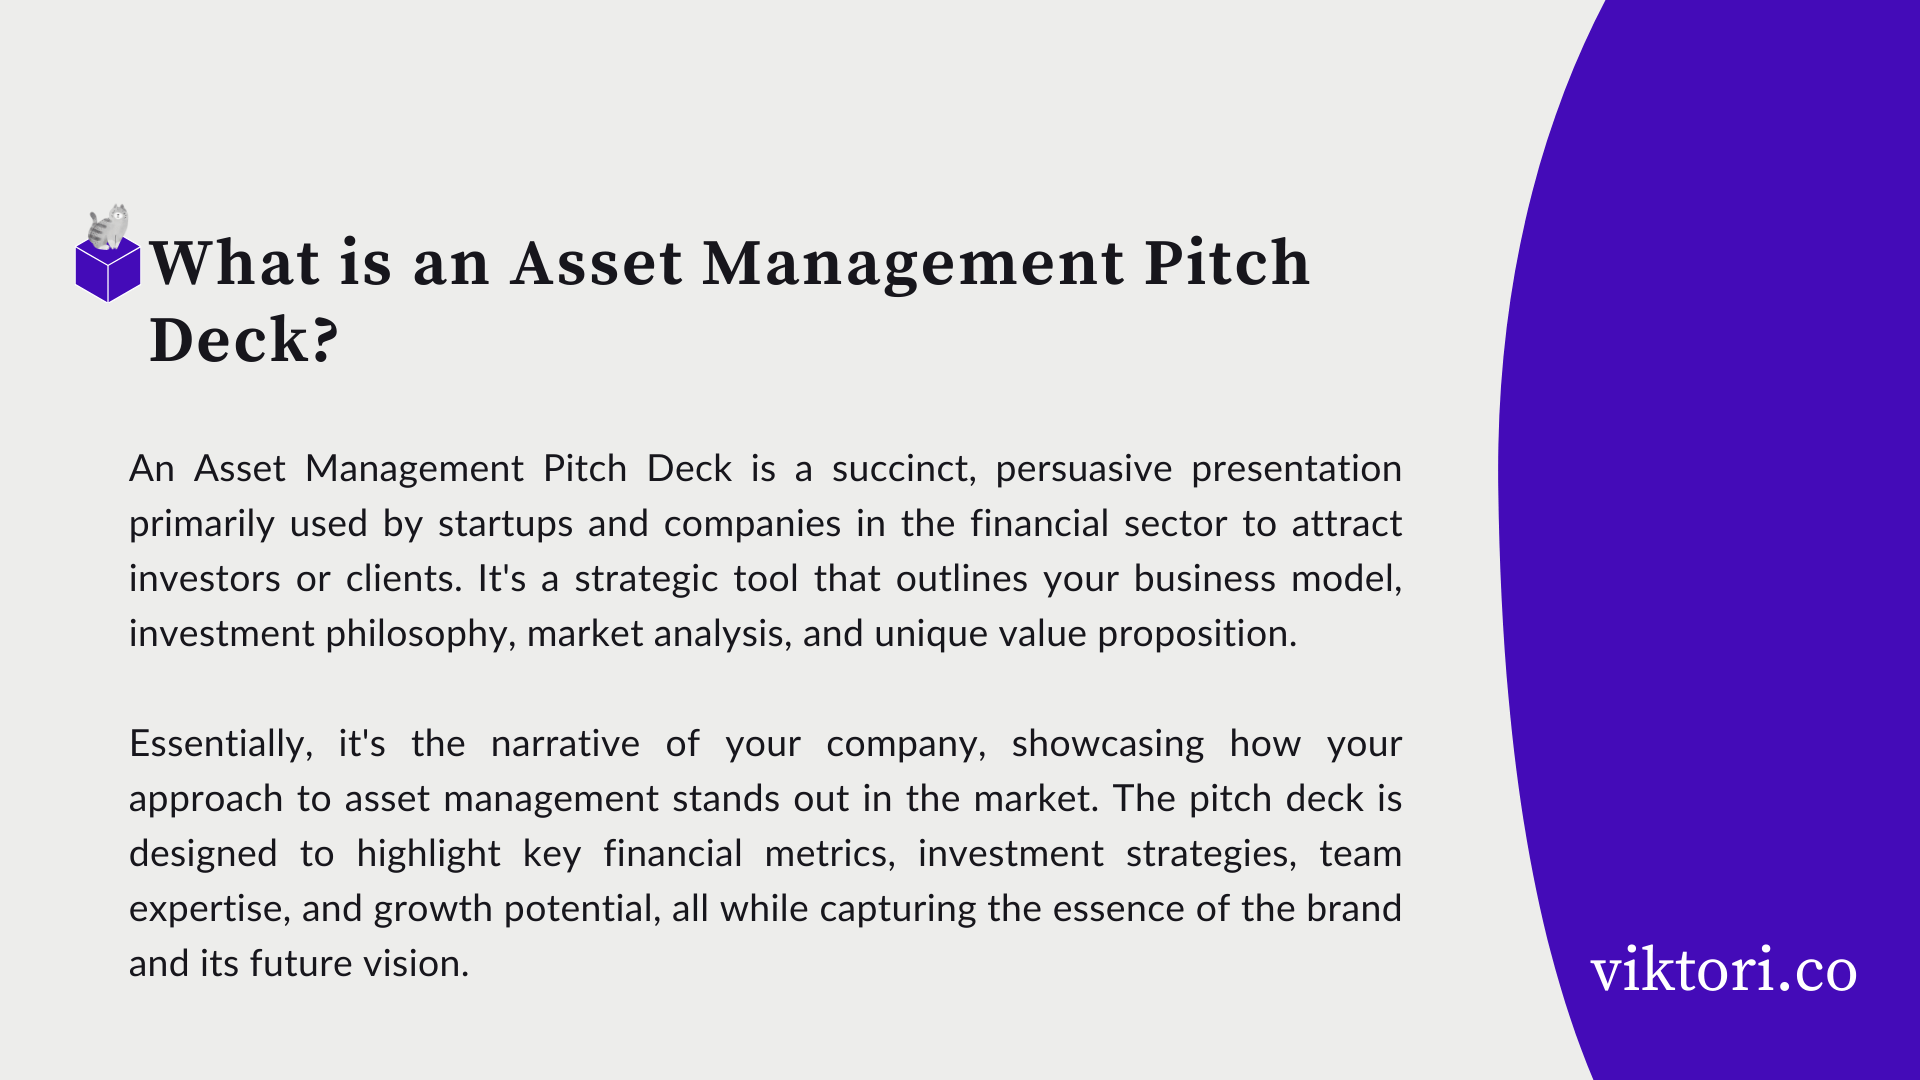 Asset Management Pitch Deck Definition